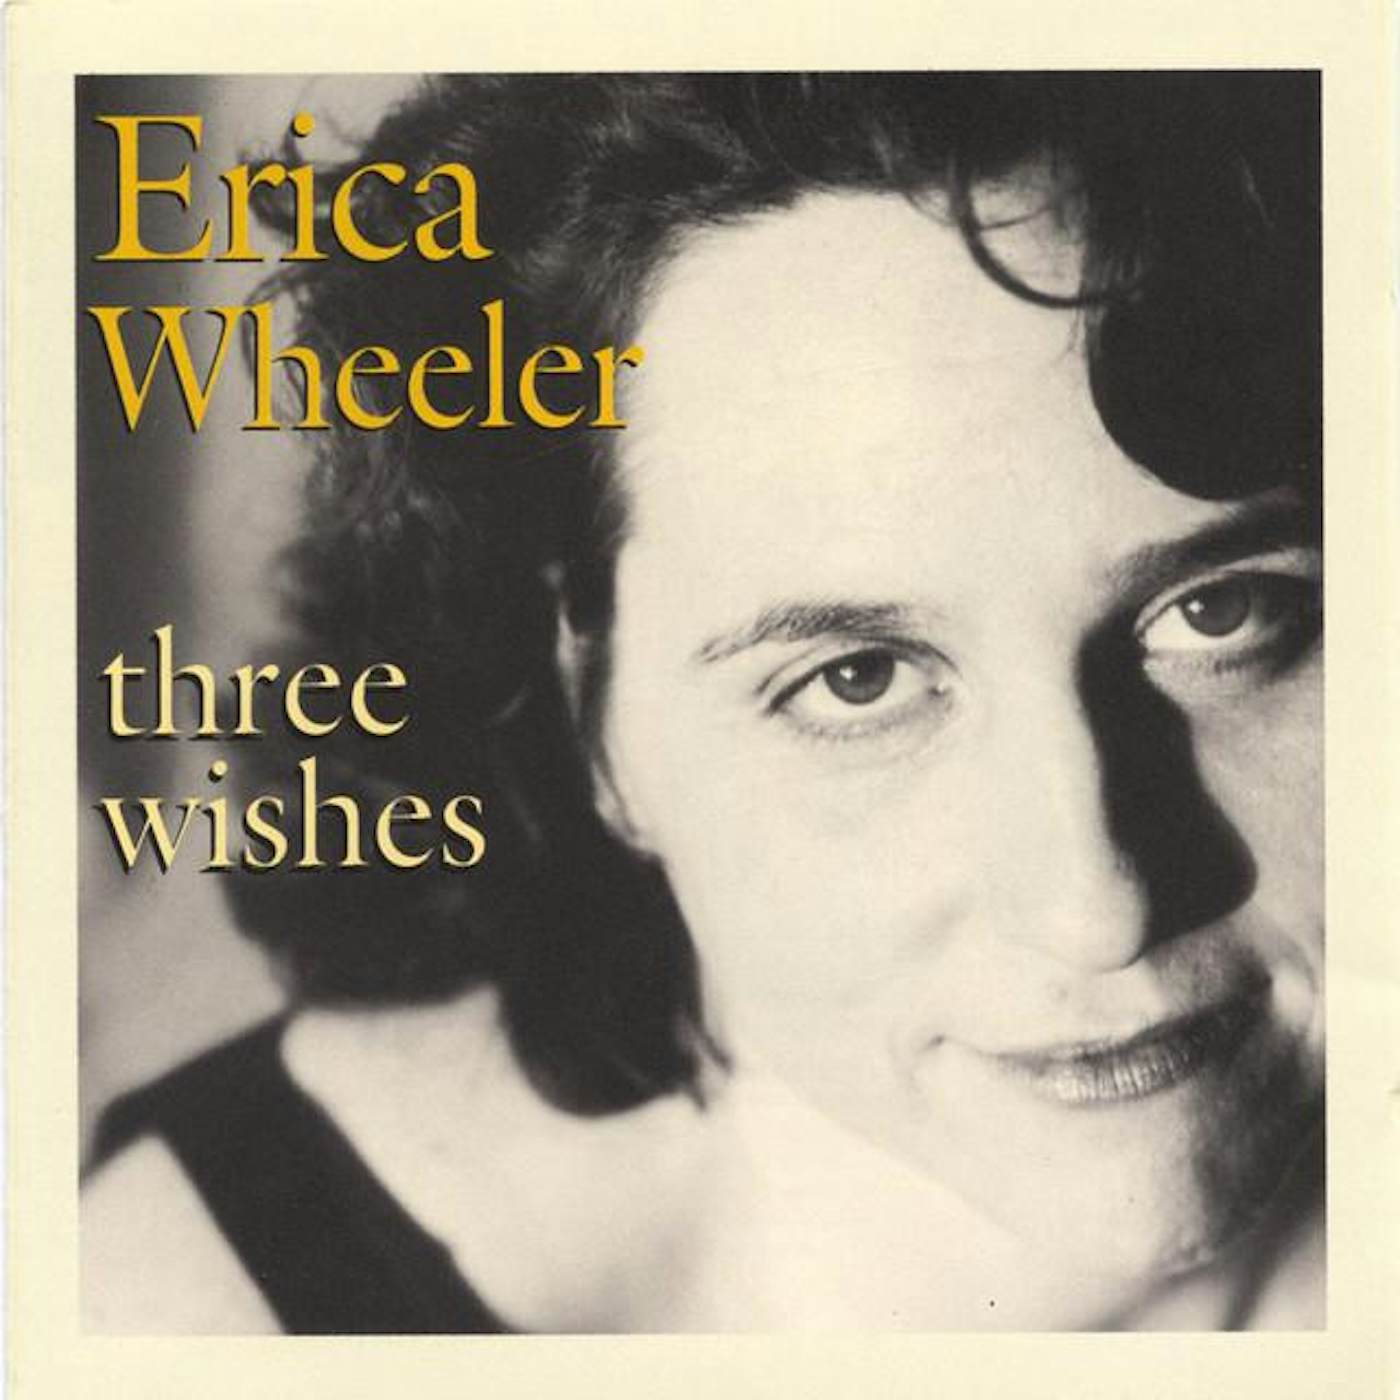 Erica Wheeler